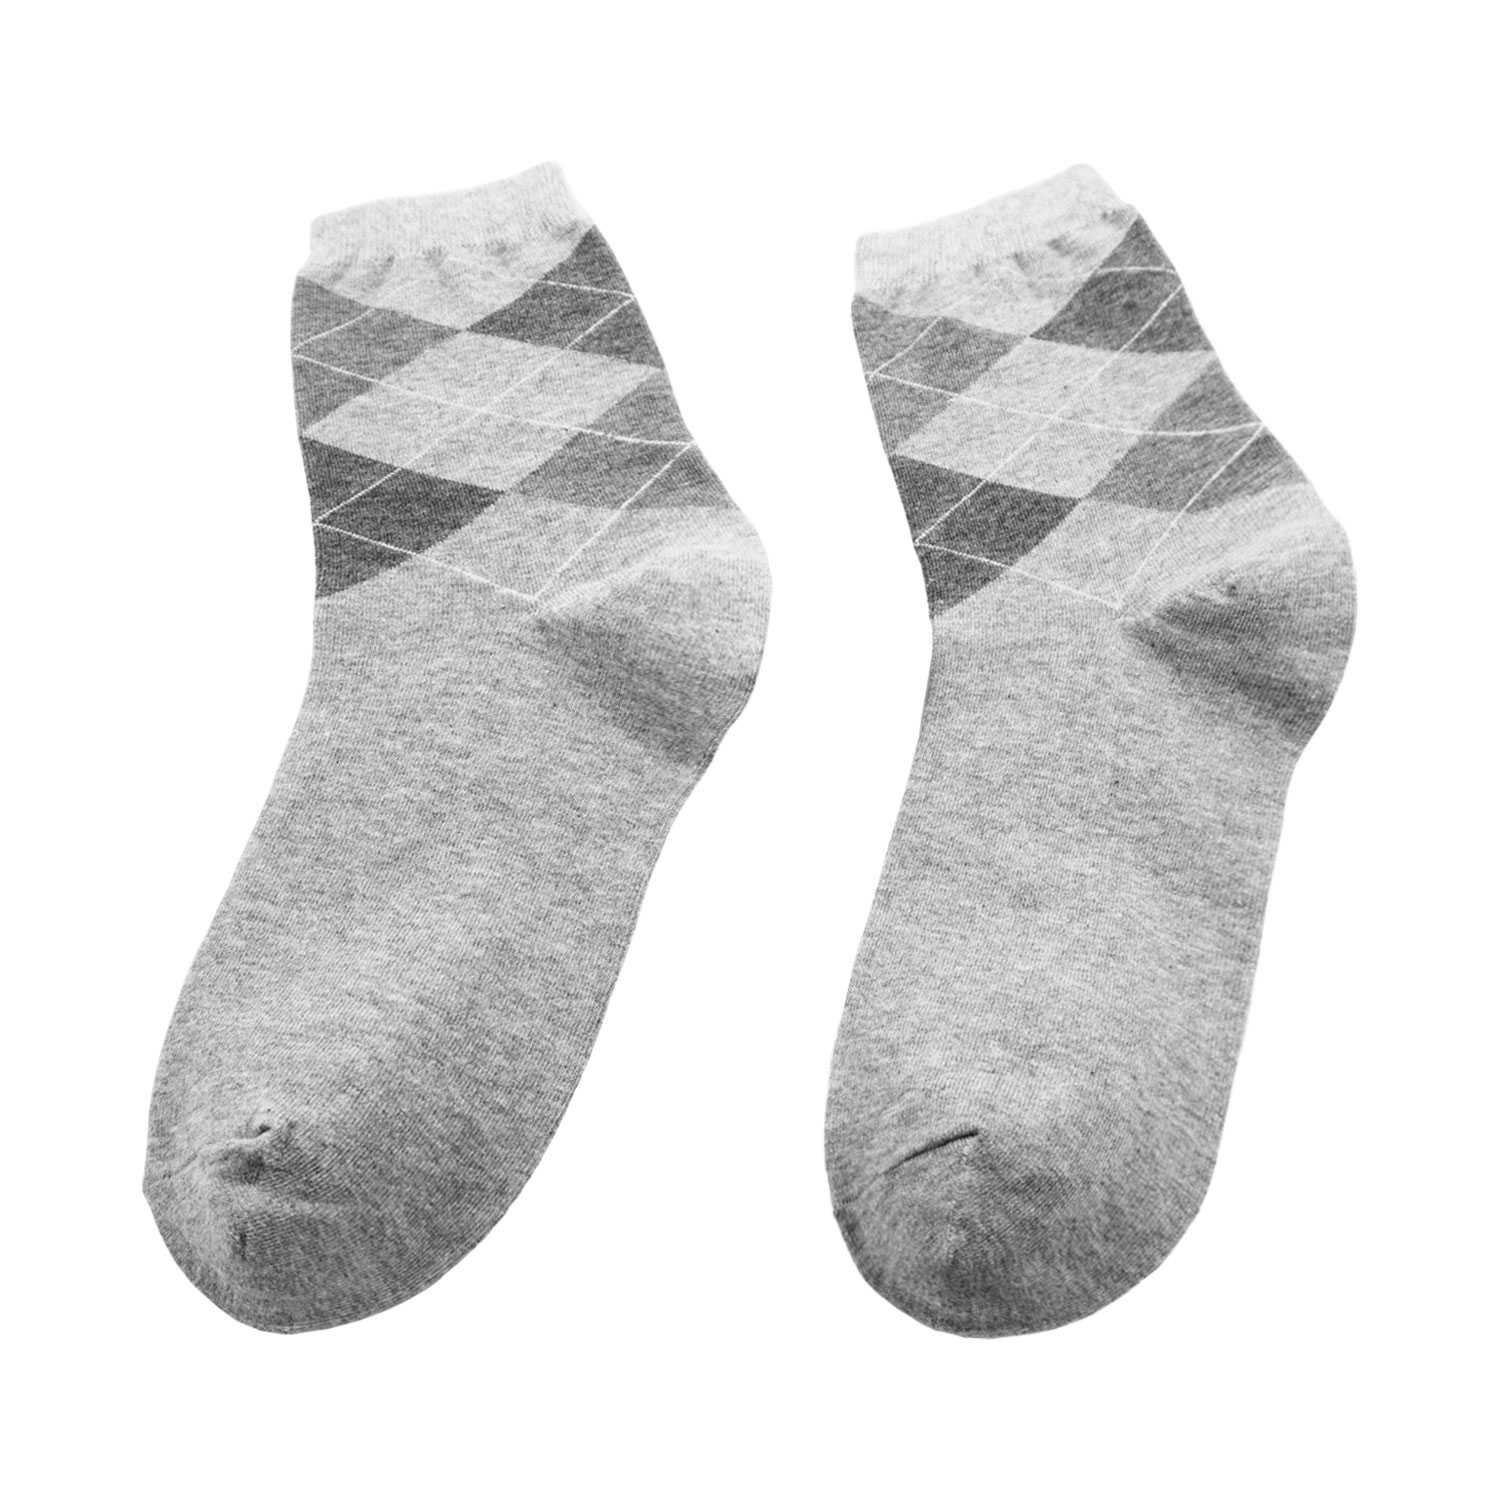 Men's Argyle Design Fashion Crew Socks - Zestique